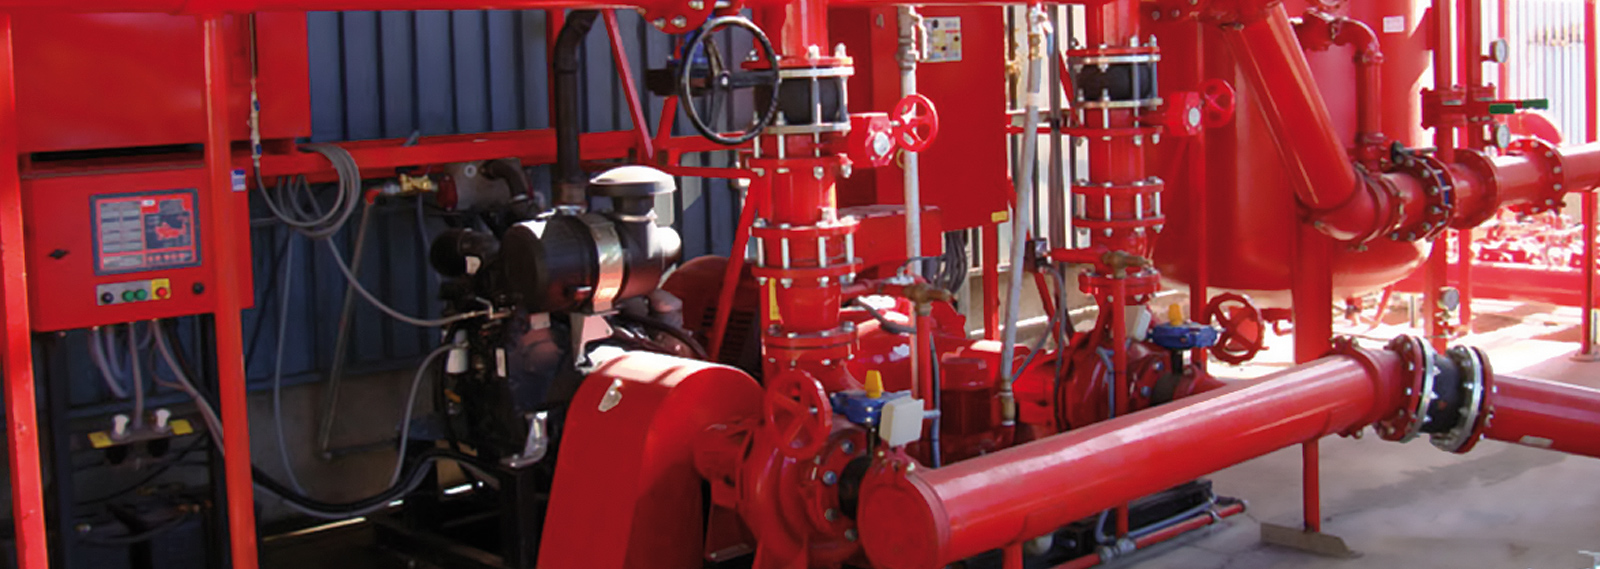 Gefisa - Diseño, instalación y mantenimiento integral de sistemas de protección contra incendios